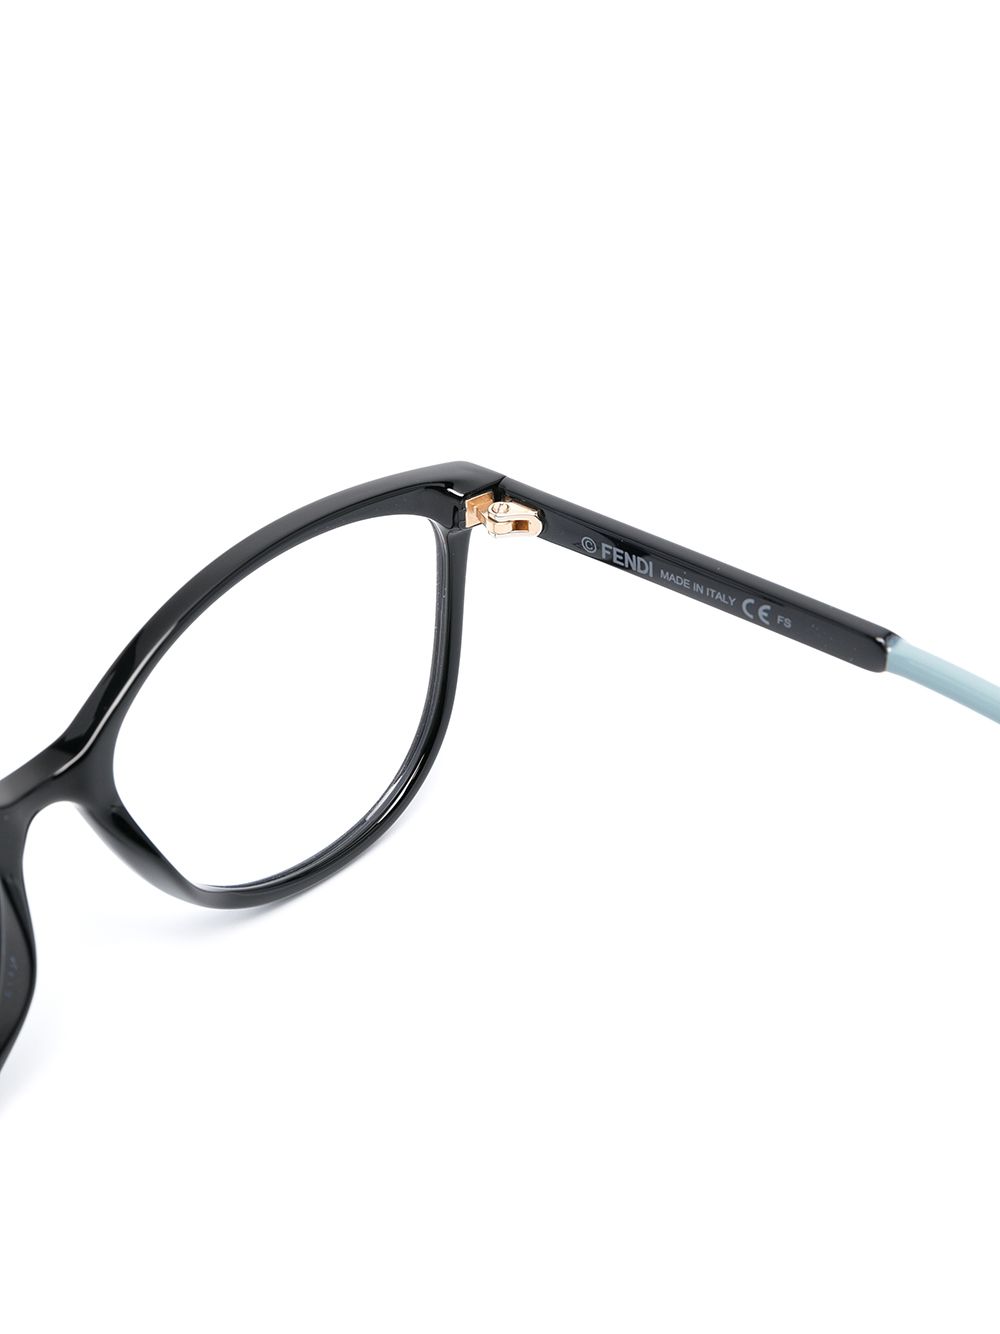 фото Fendi eyewear очки ff0449 в оправе 'кошачий глаз'